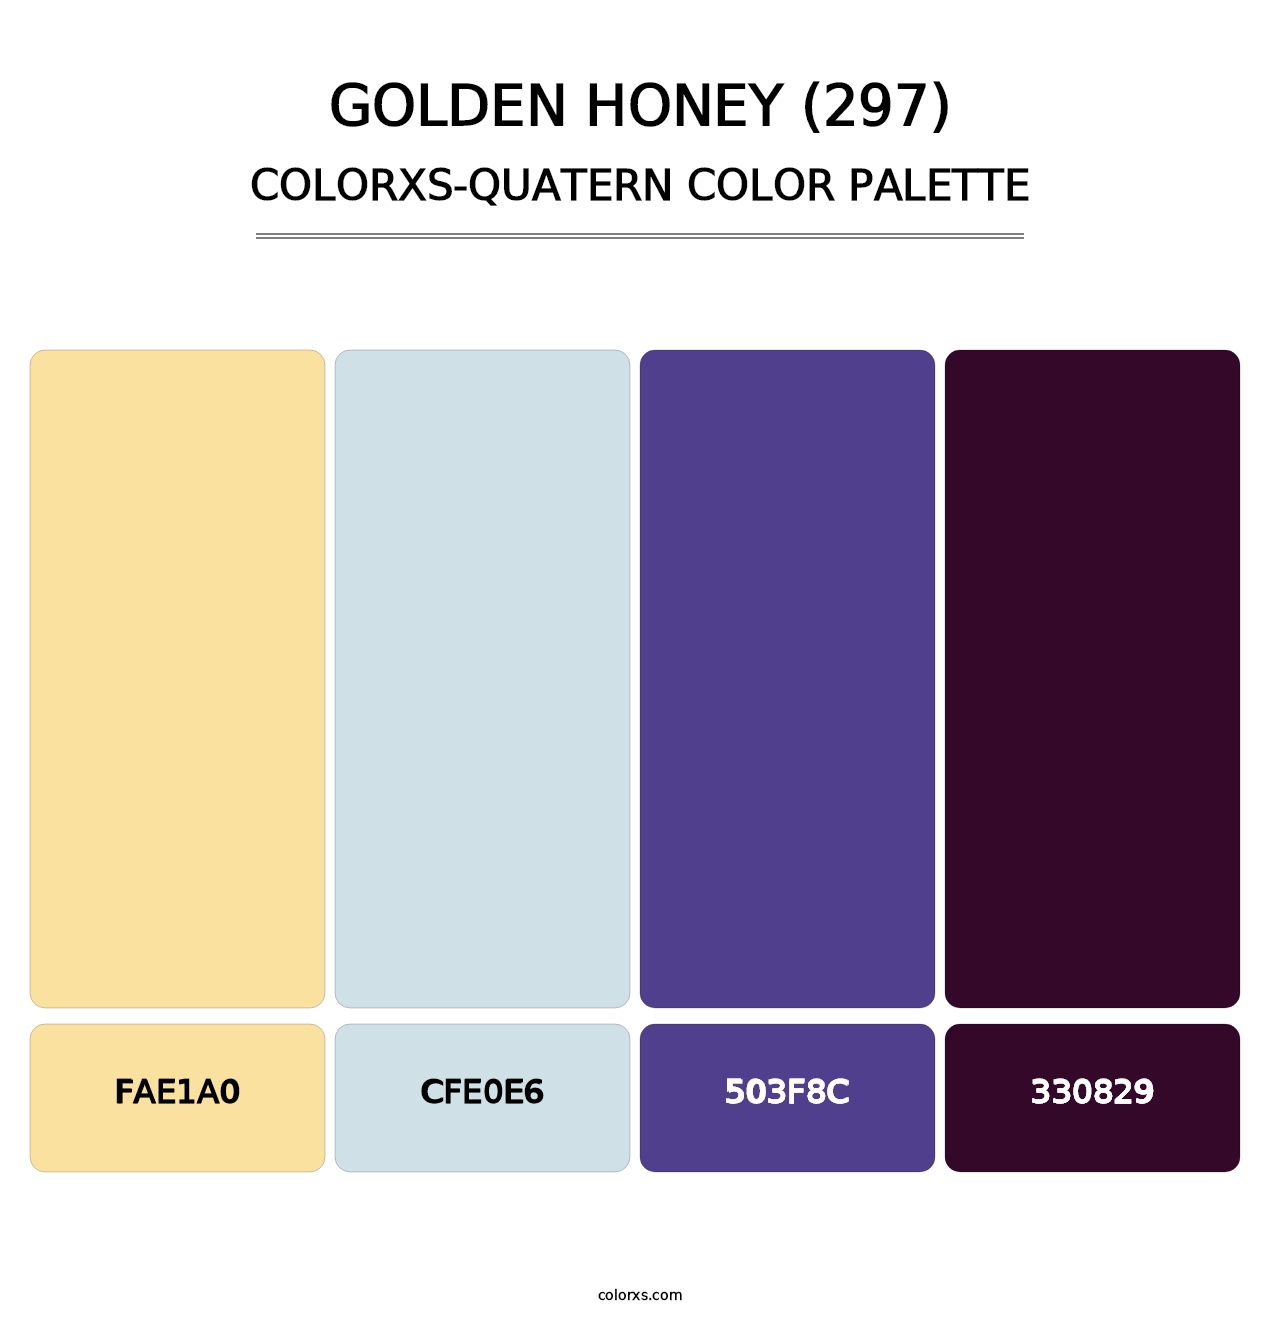 Golden Honey (297) - Colorxs Quatern Palette